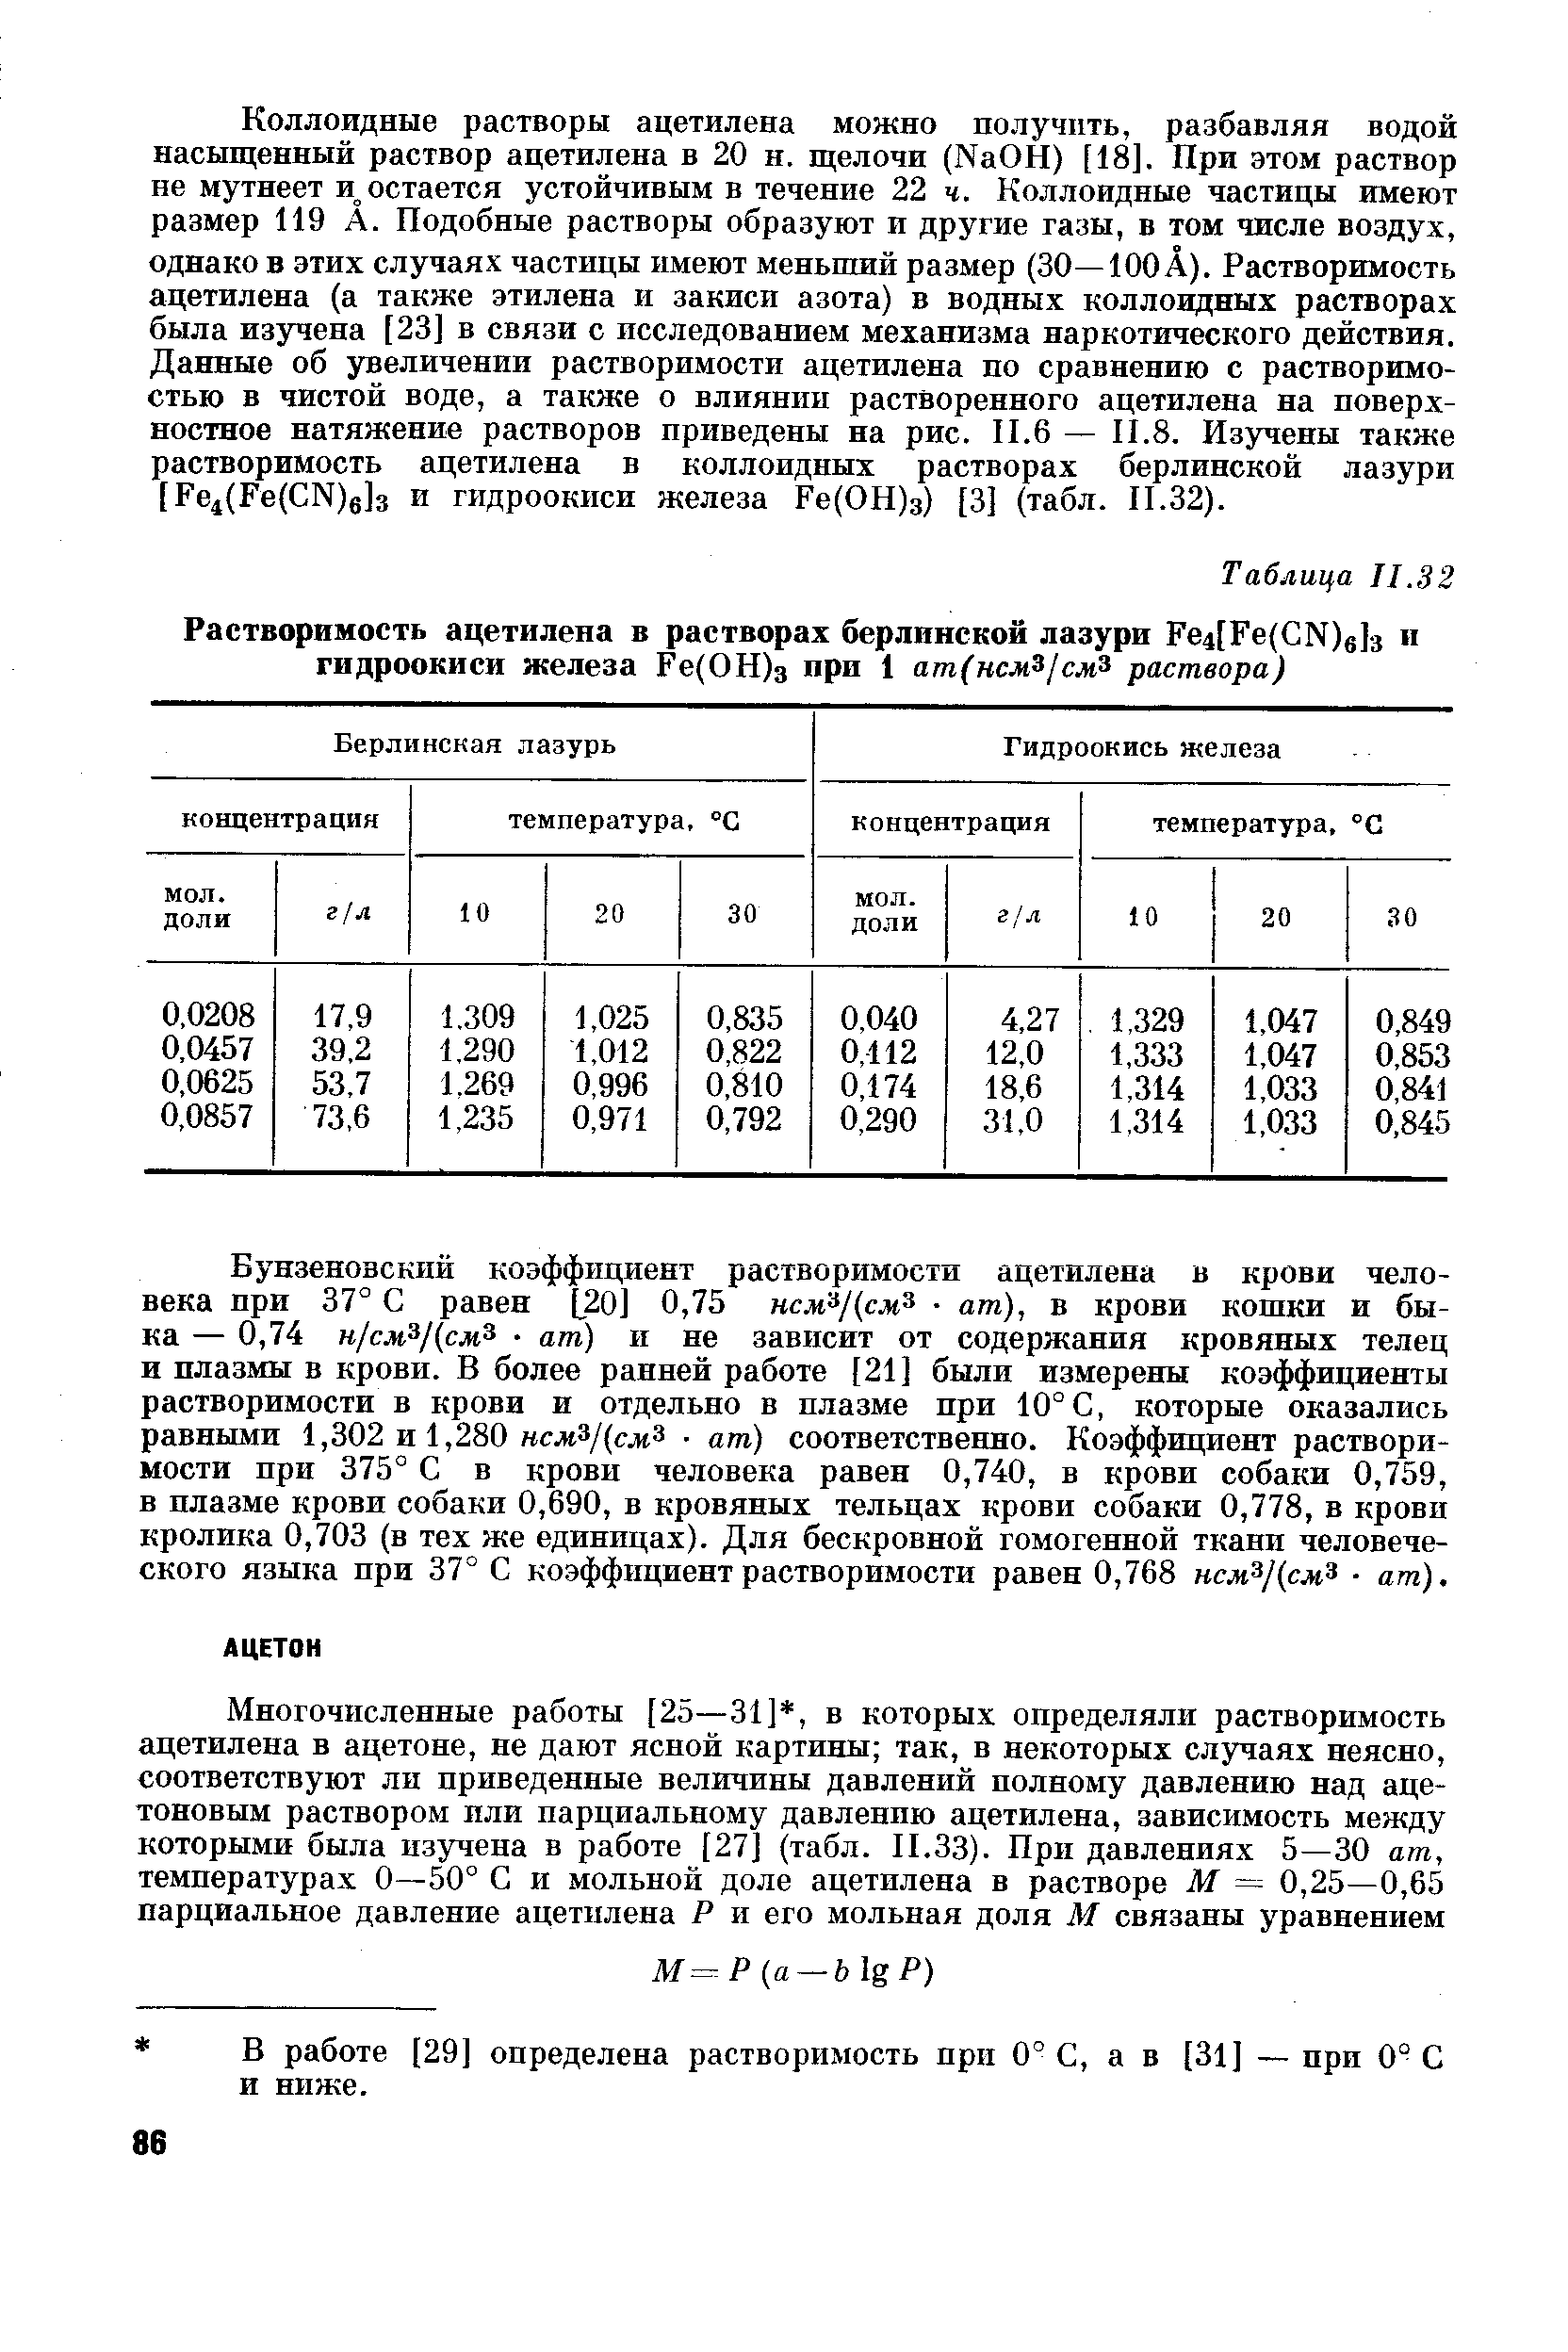 В работе [29] определена растворимость прп 0° С, а в [31] — нри 0 С и ниже.